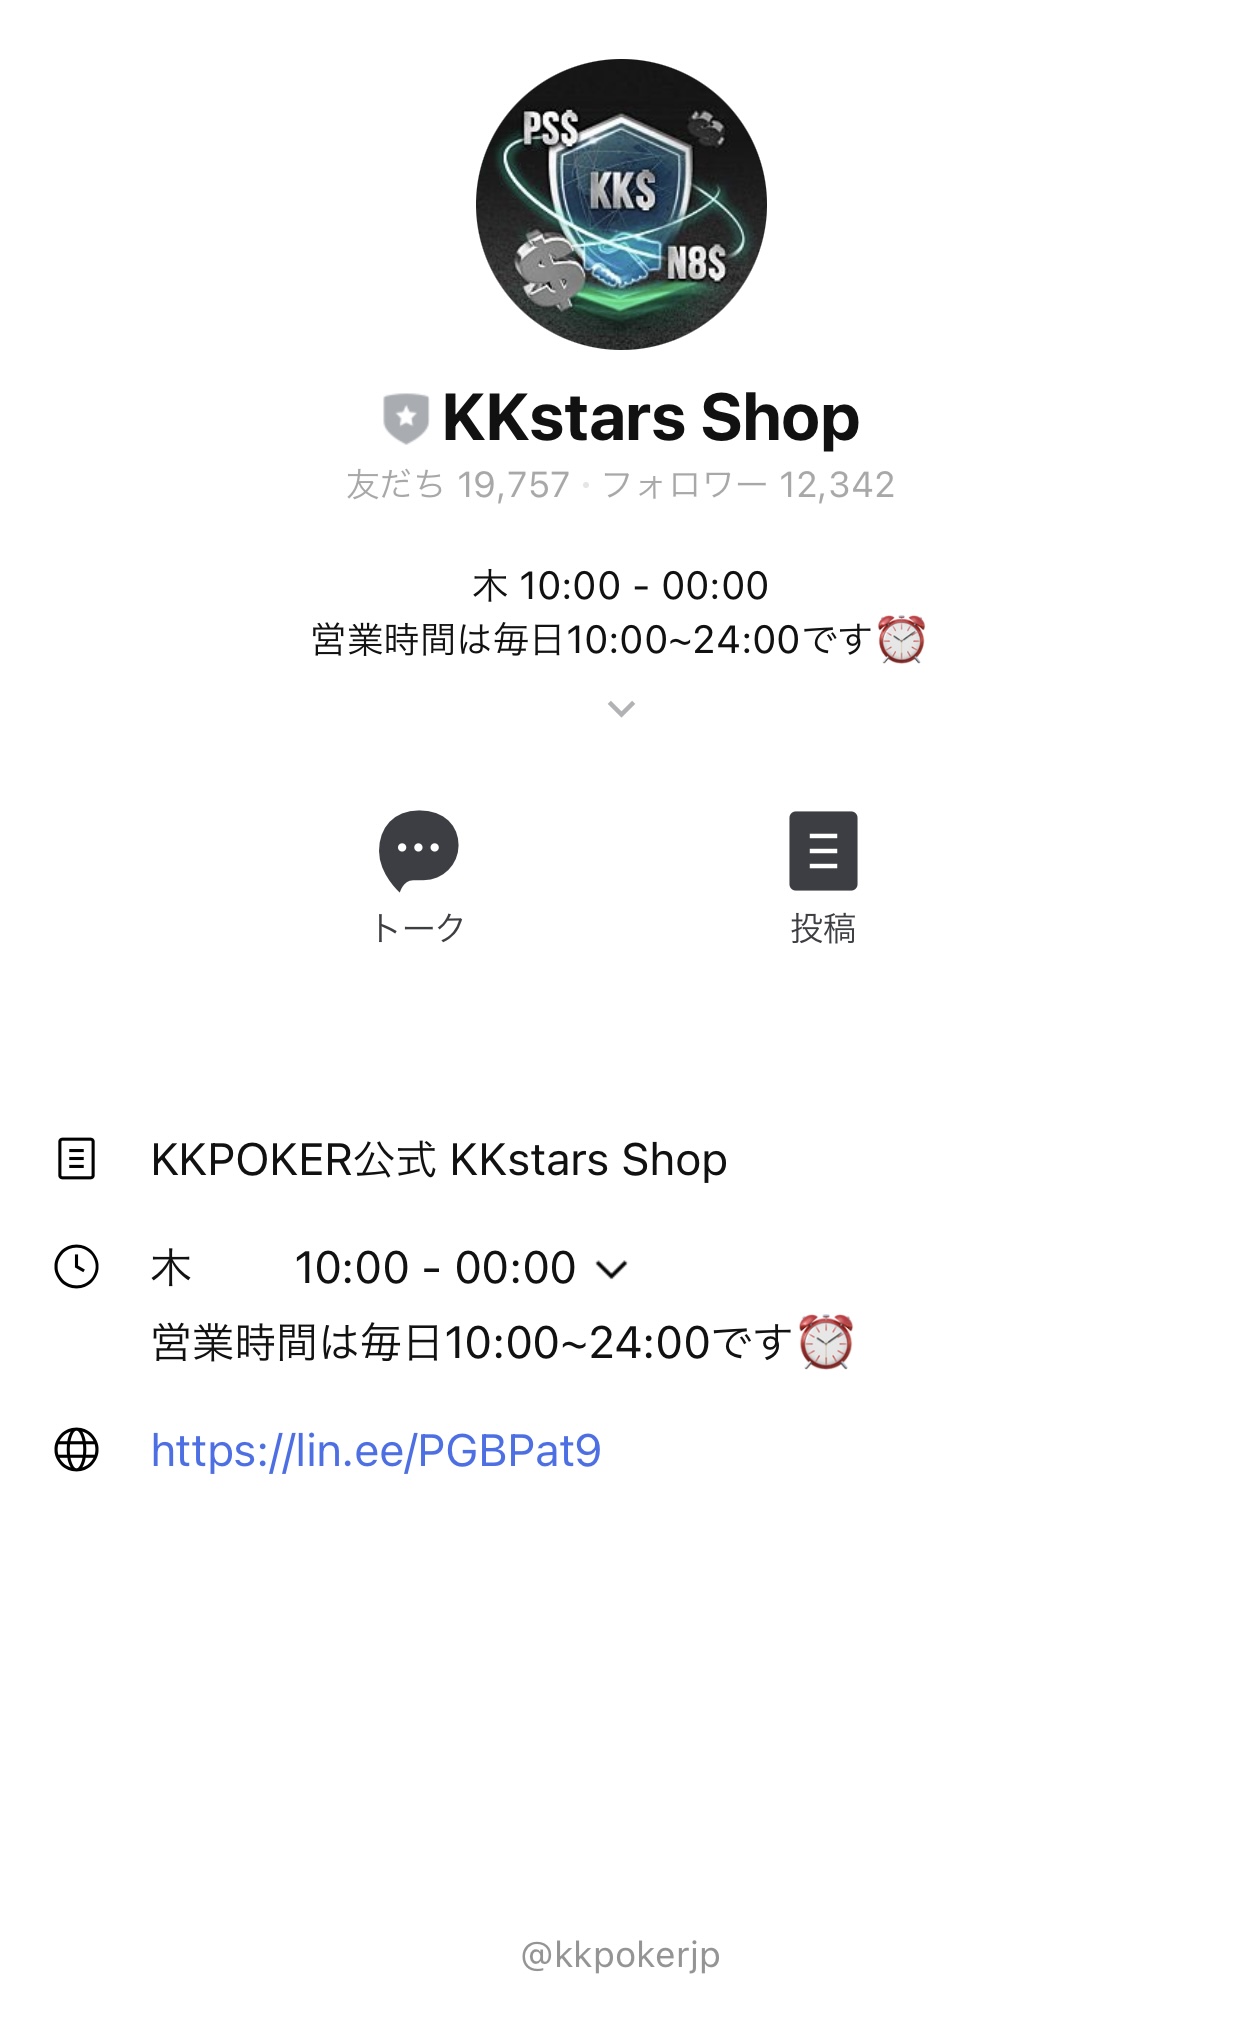 kkstars shop